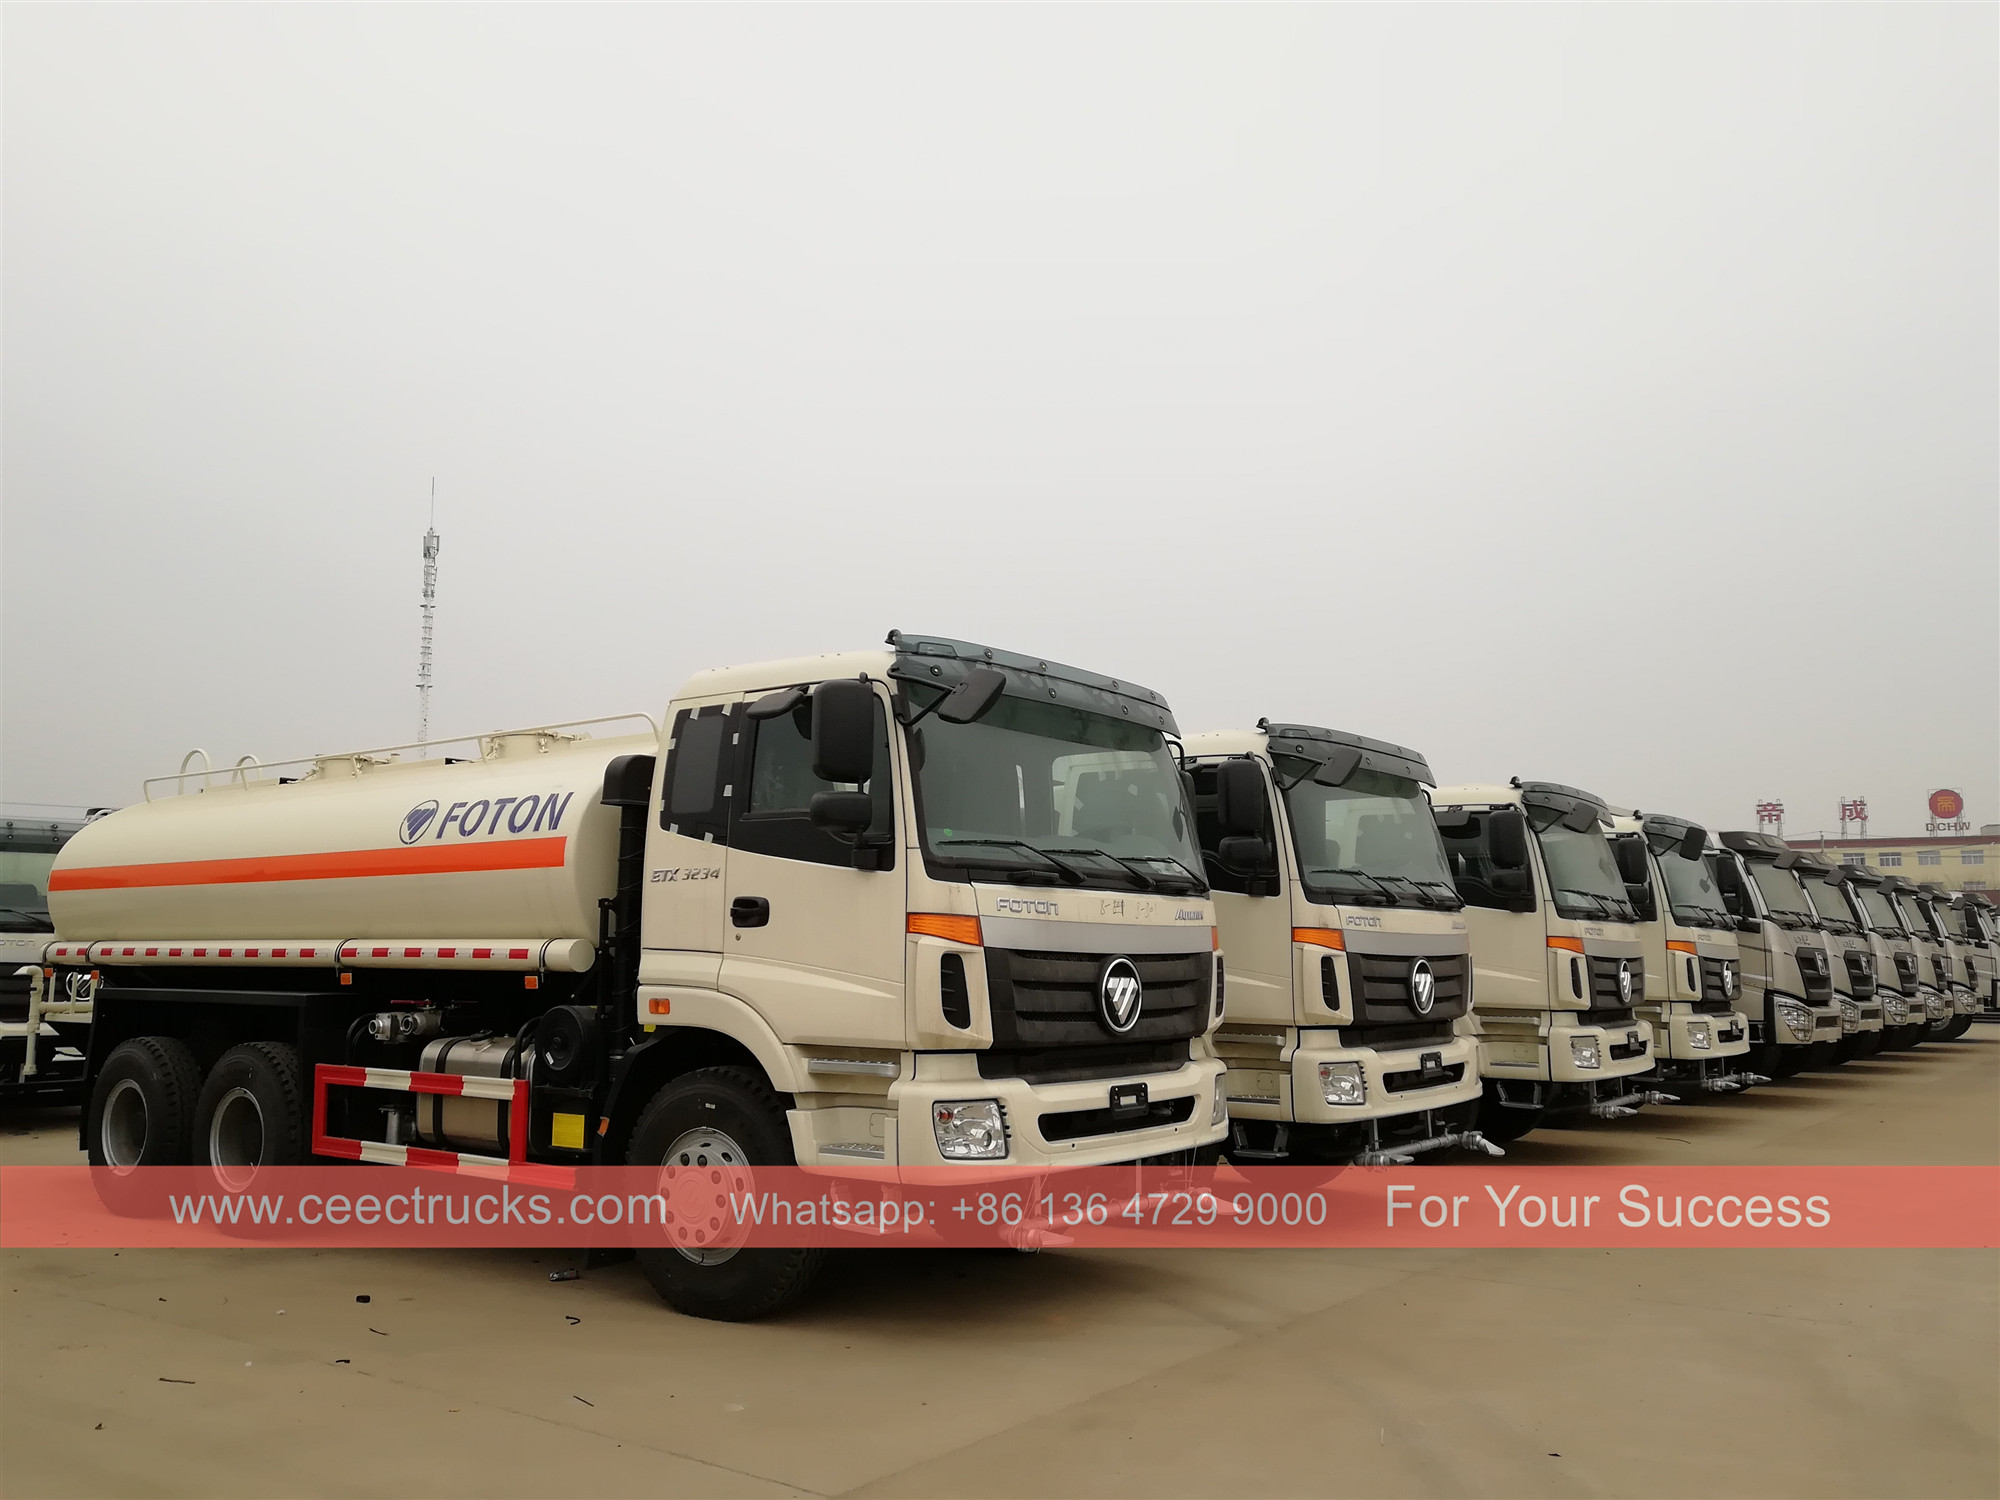 35 camions-citernes ont été livrés en Afrique